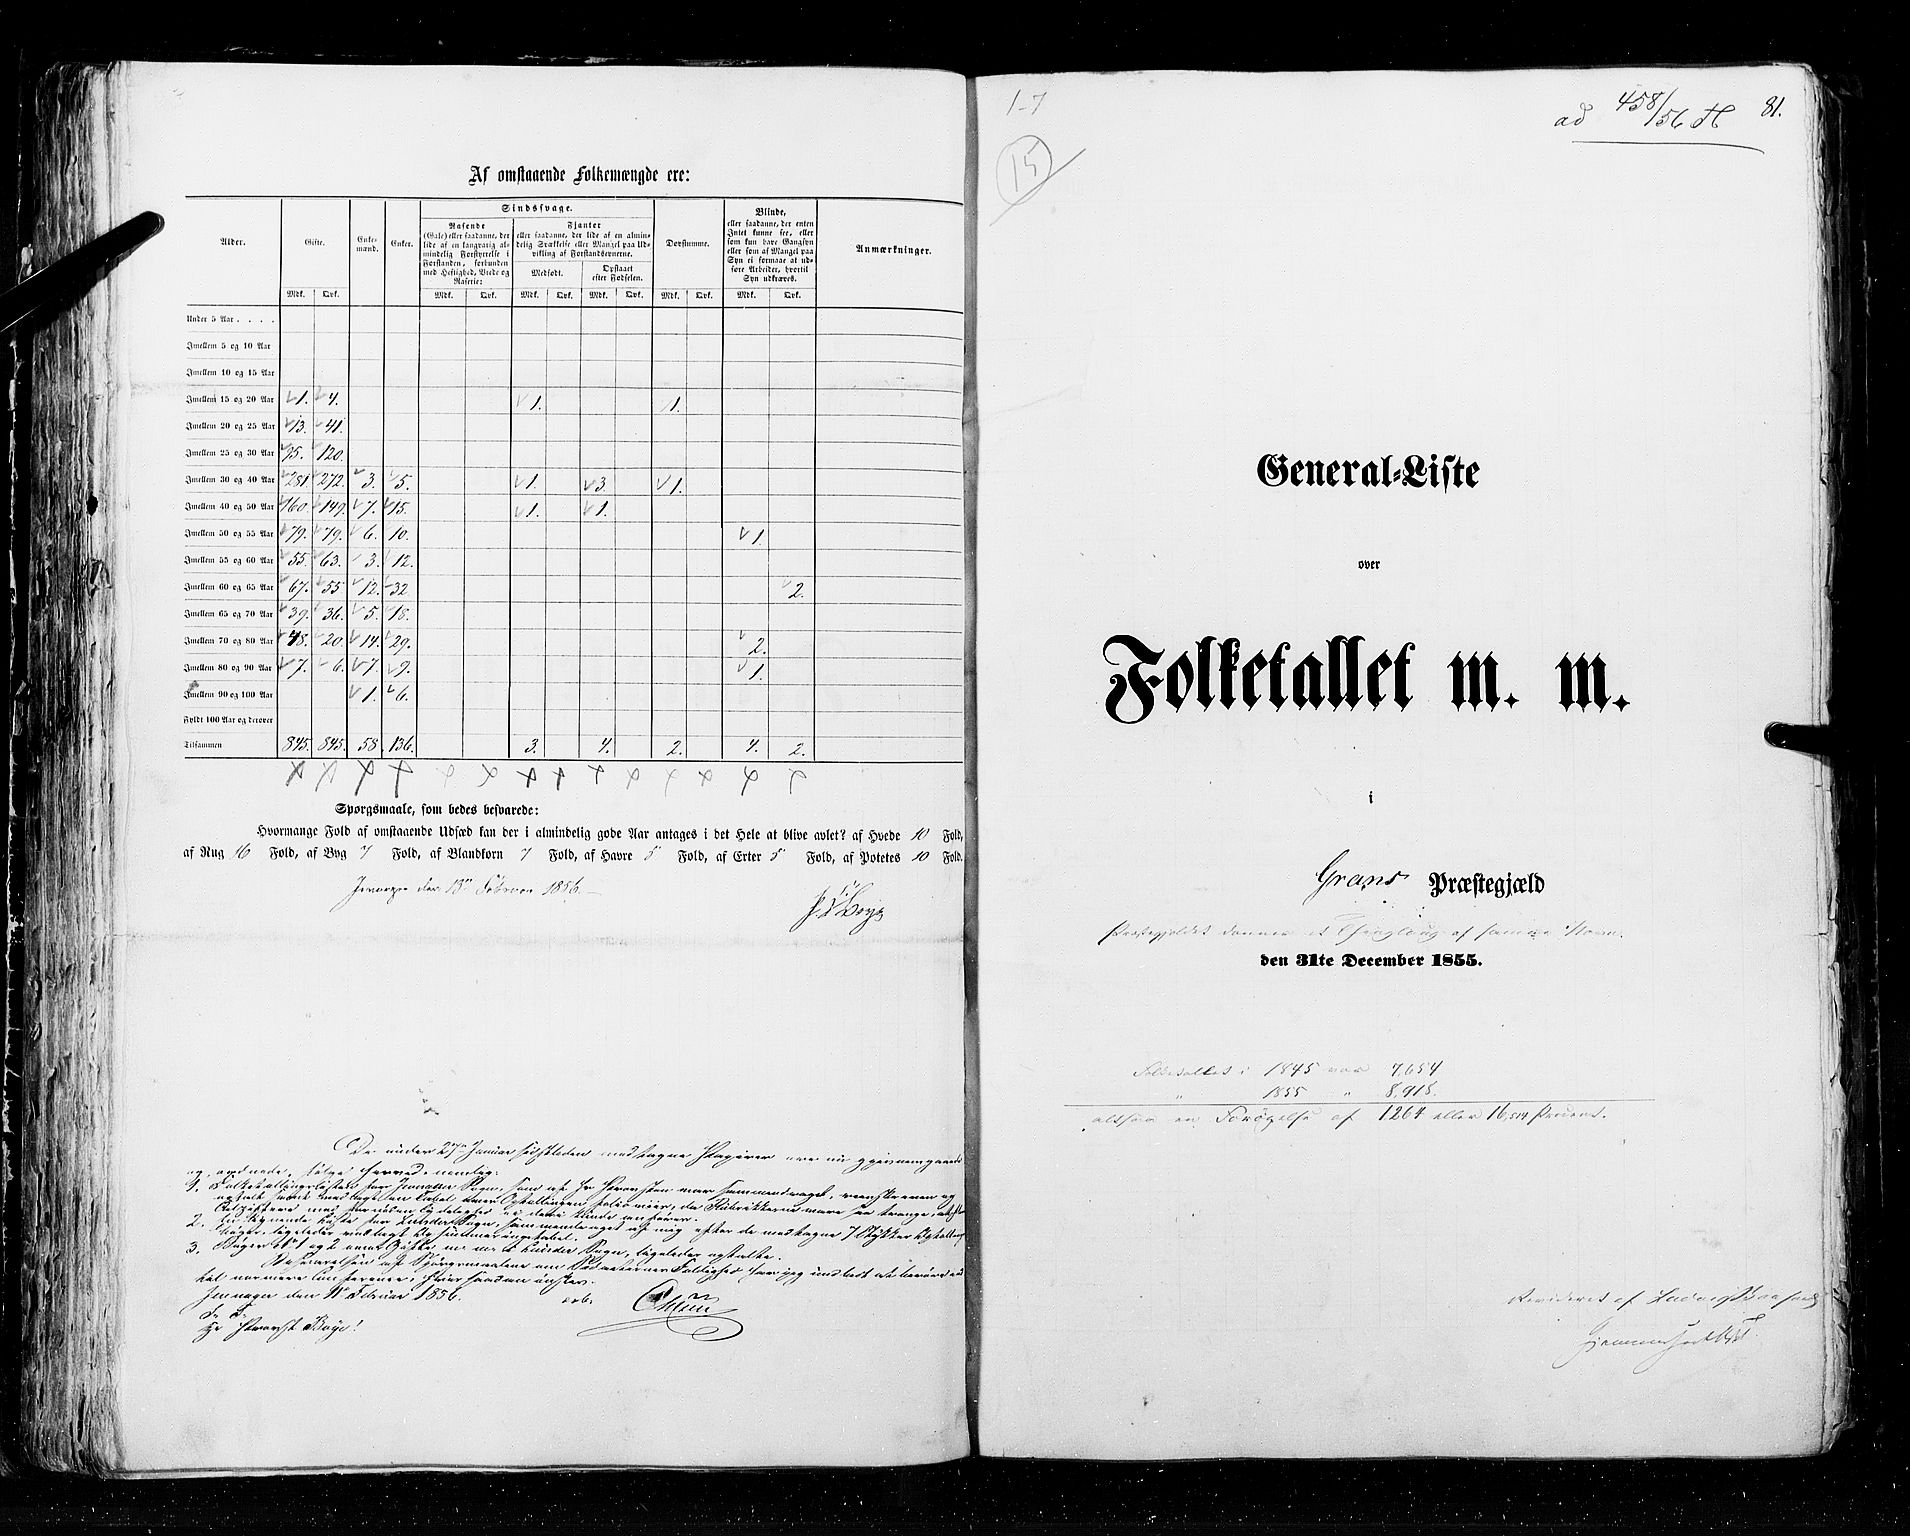 RA, Folketellingen 1855, bind 2: Kristians amt, Buskerud amt og Jarlsberg og Larvik amt, 1855, s. 81